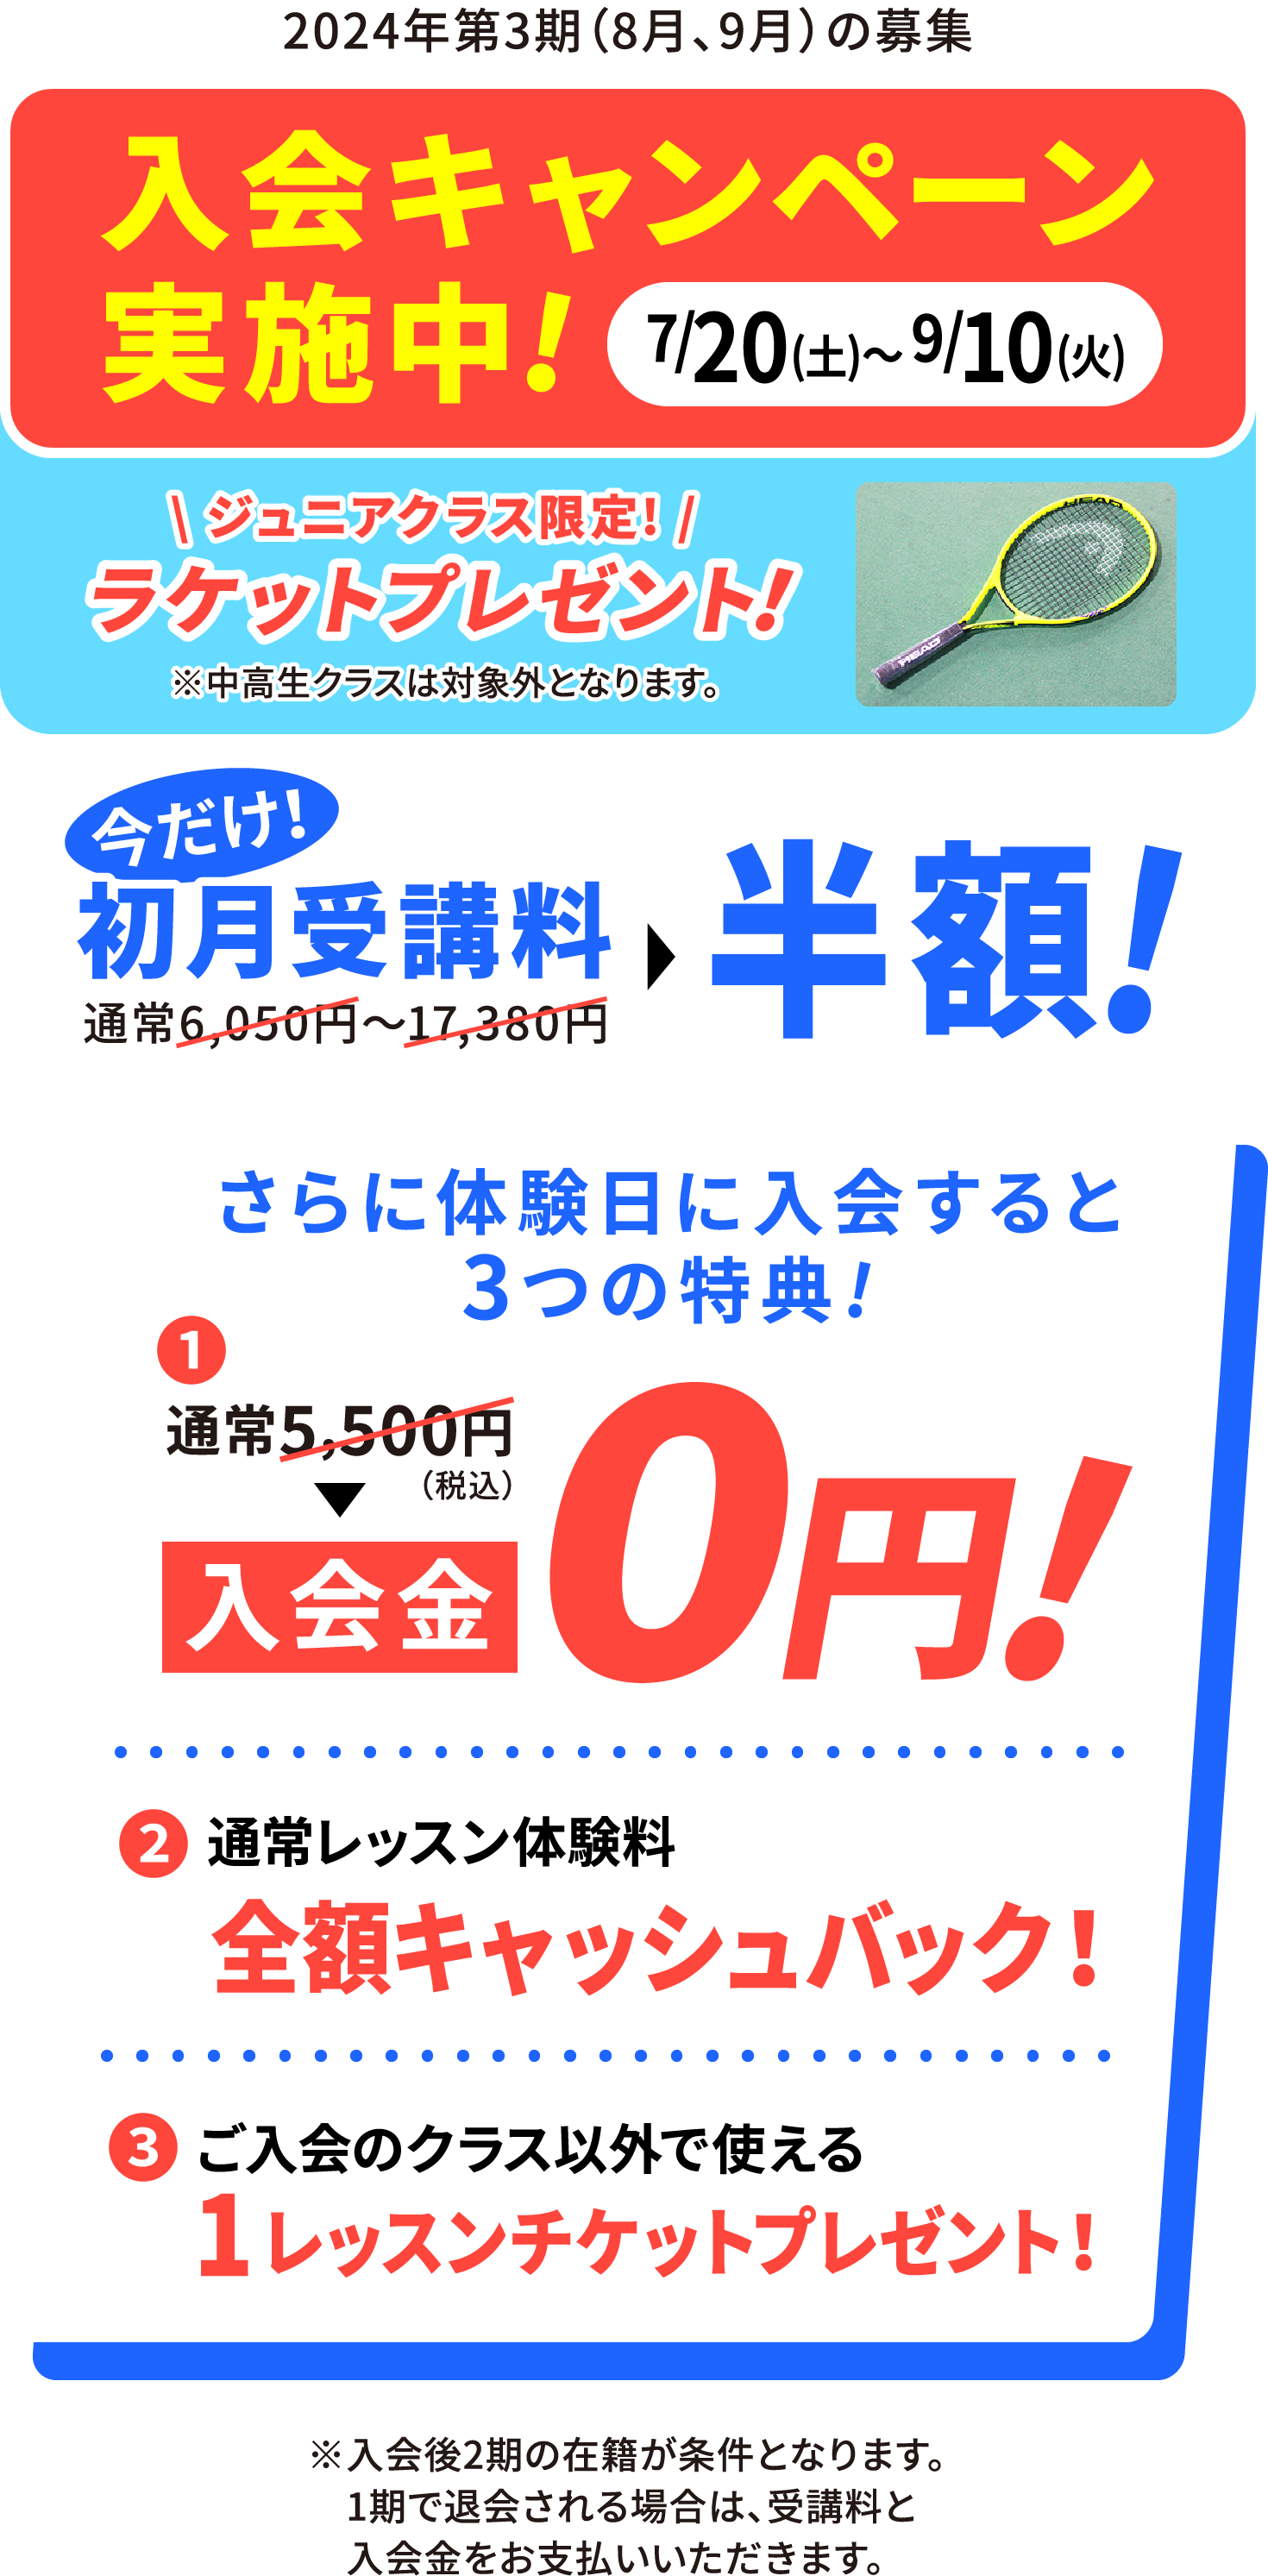 2024/5/20(月)〜2024/7/10(水) 入会キャンペーン実施中!